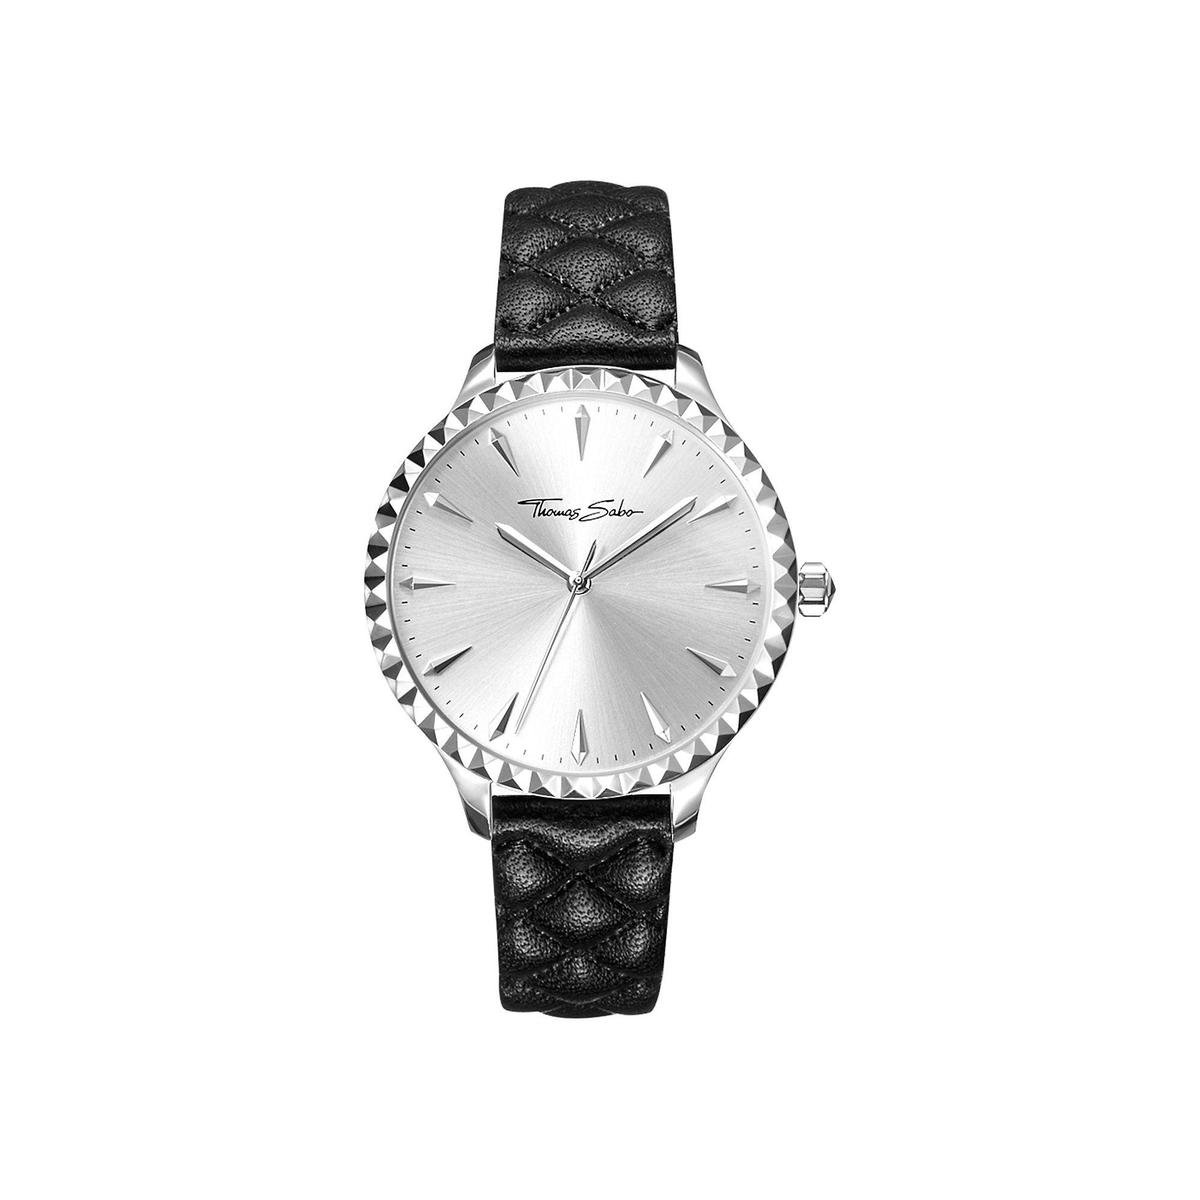 Thomas Sabo Watches analoog Quartz One Size 87466744